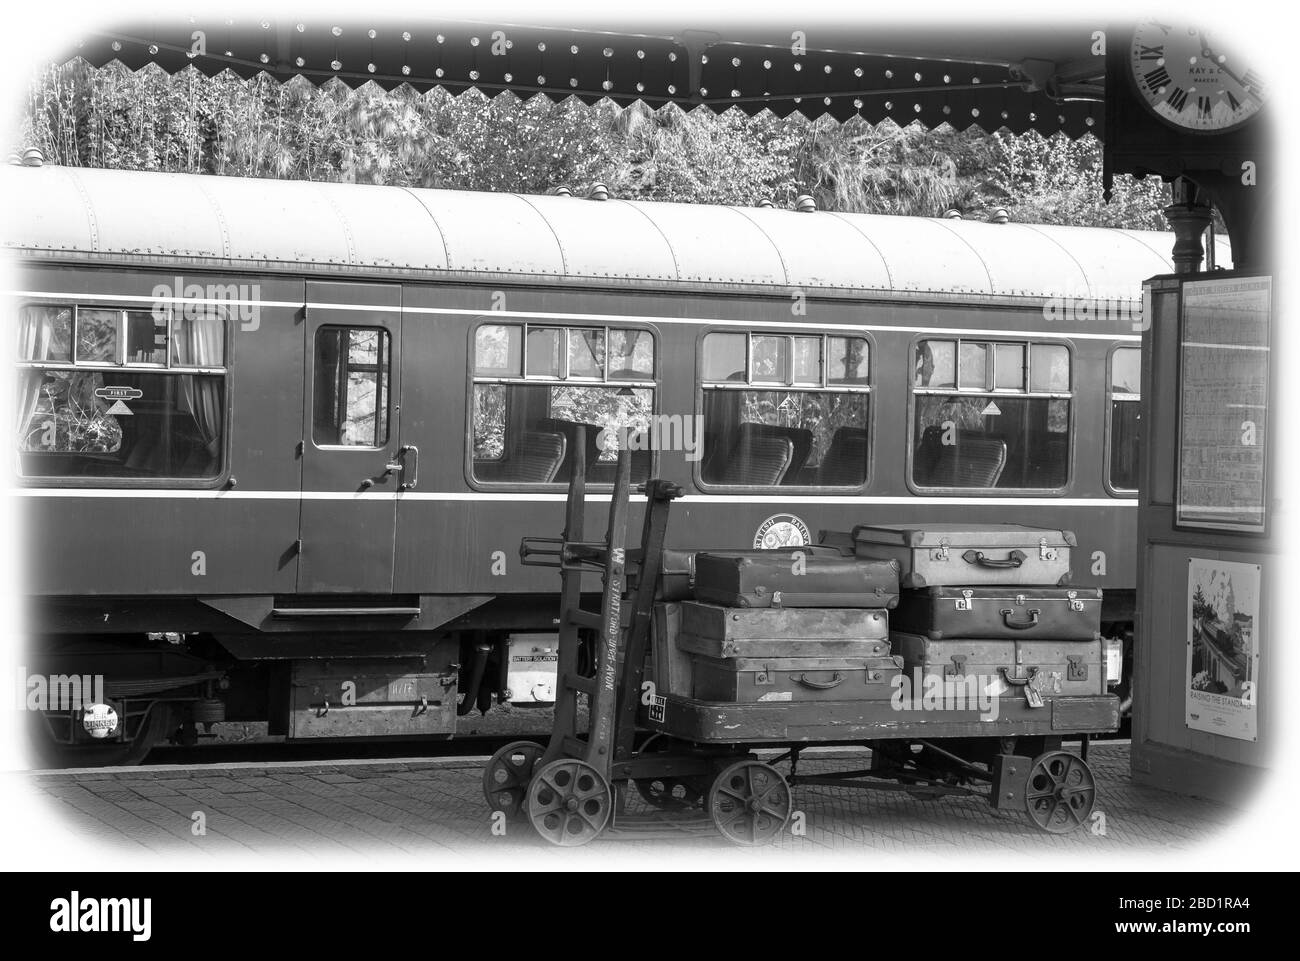 Vue noir et blanc mono, plate-forme de la gare d'époque de Bewdley, Severn Valley Heritage Railway, Royaume-Uni. Bagages vintage, valises sur le chariot à bagages. Banque D'Images